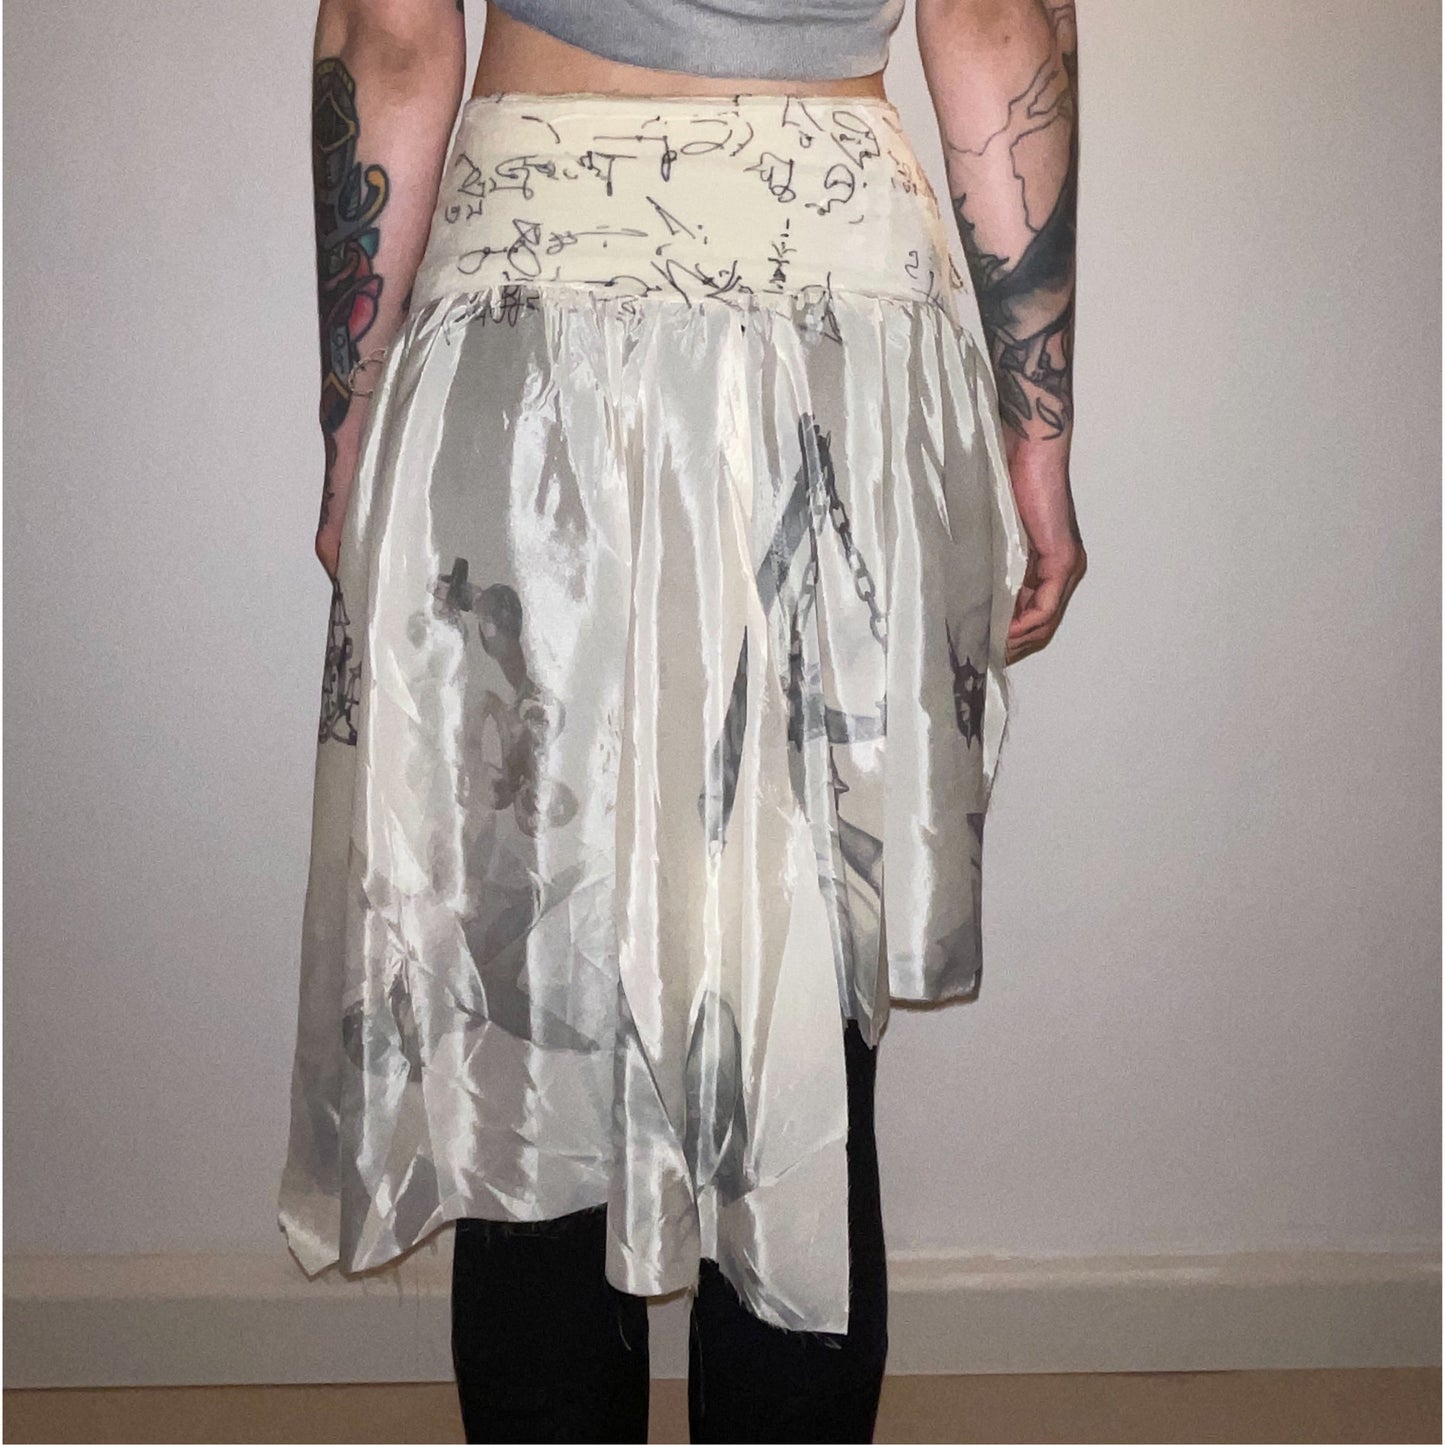 ghostie skirt